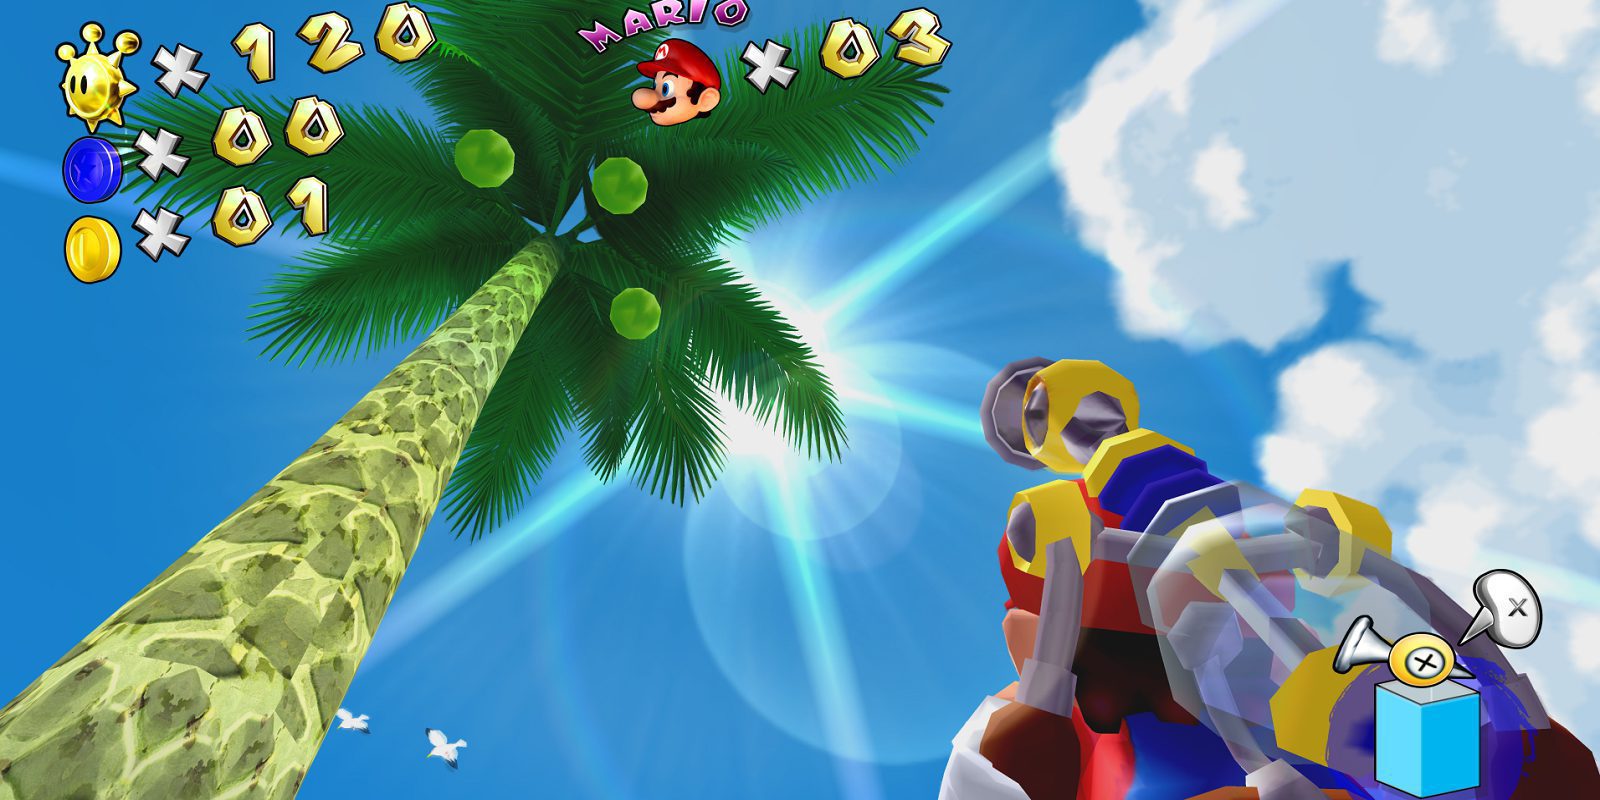 Espectacular vídeo de 'Super Mario Sunshine' recreado con Unreal Engine 4 por un fan